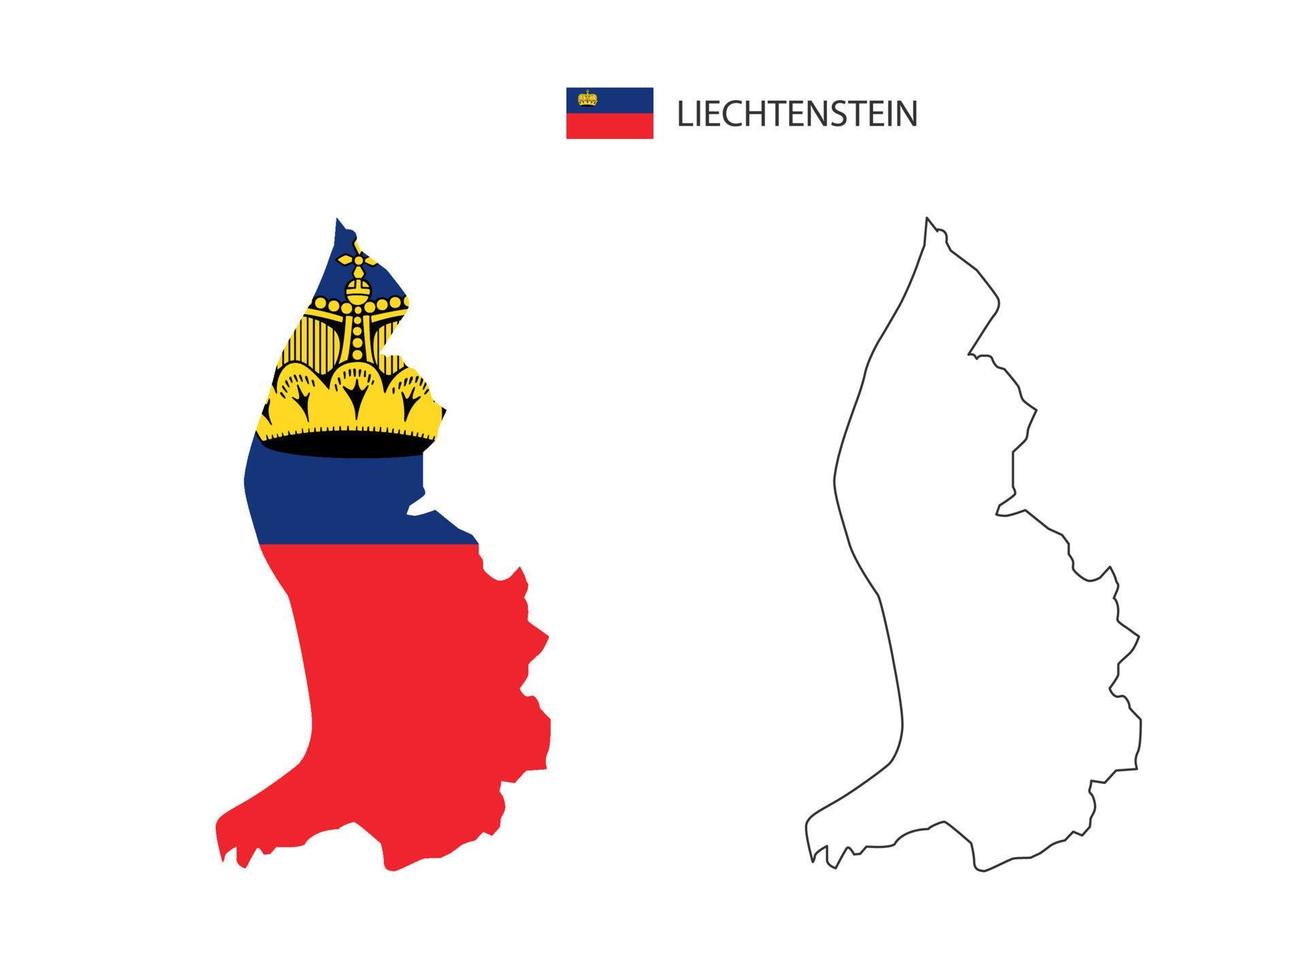 vector de ciudad de mapa de liechtenstein dividido por estilo de simplicidad de contorno. tiene 2 versiones, versión de línea delgada negra y versión de color de bandera de país. ambos mapas estaban en el fondo blanco.